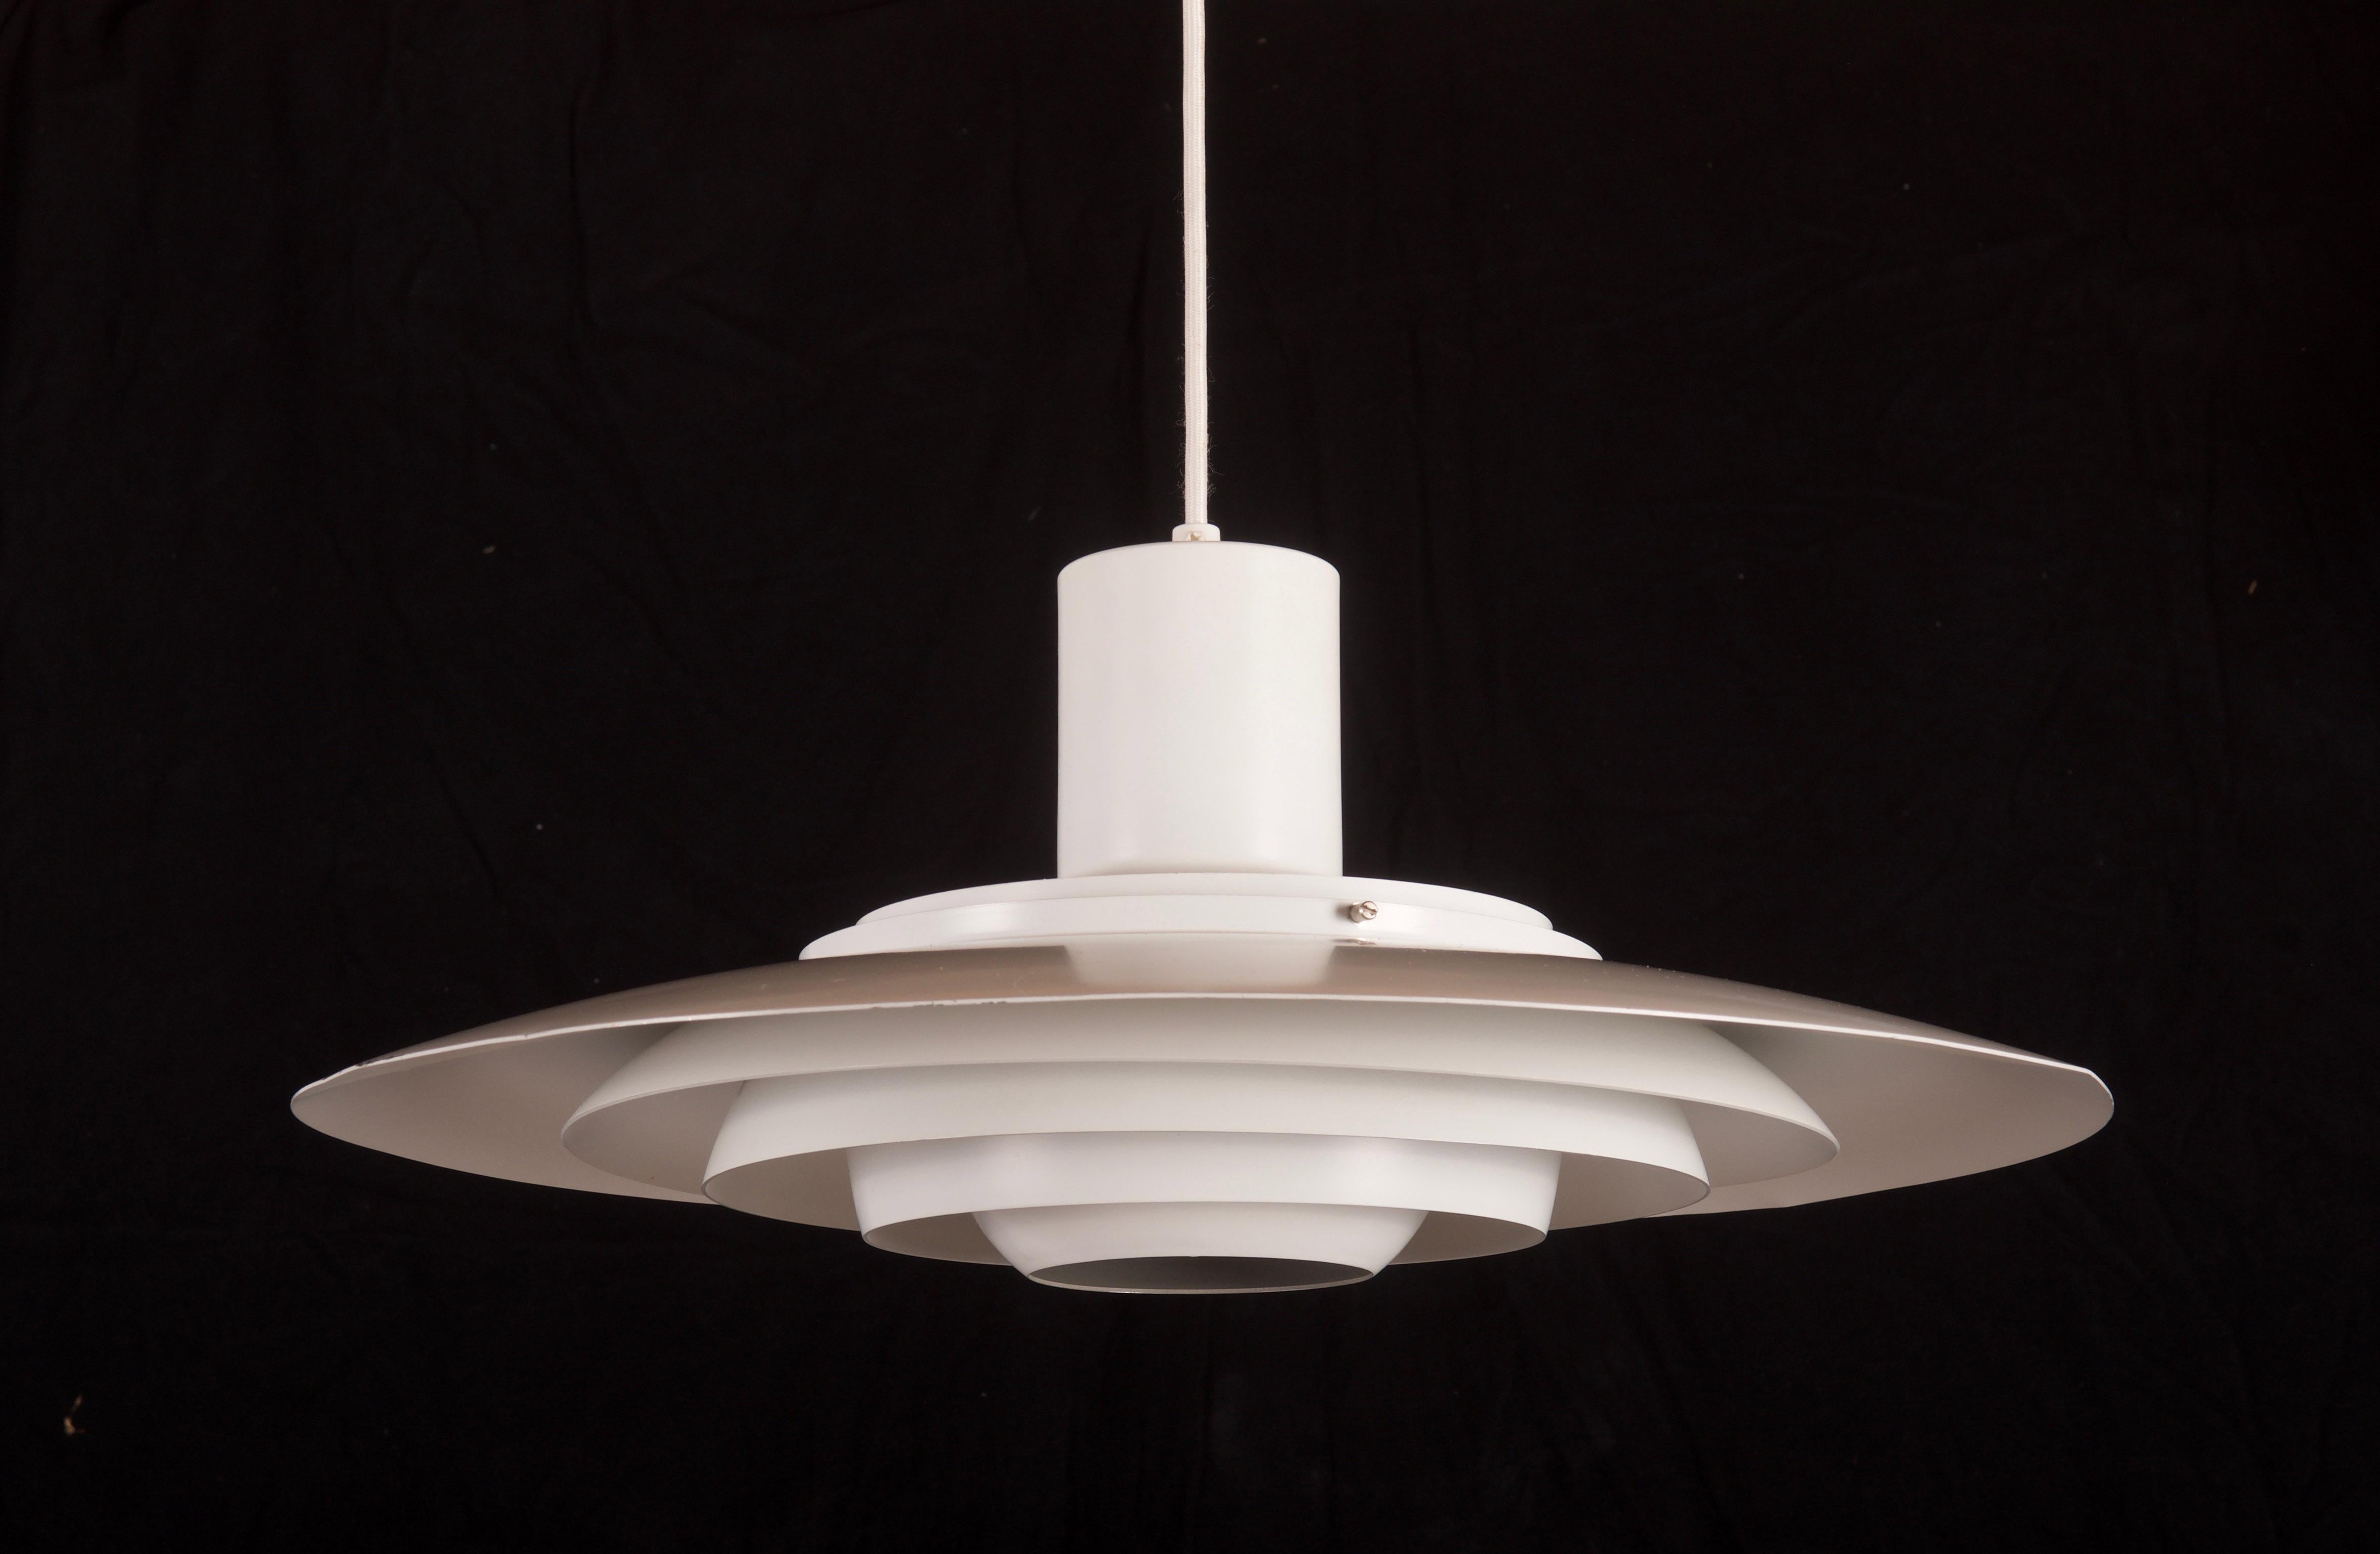 Aluminium-Pendelleuchte weiß lackiert, bestehend aus fünf Etagen, ausgestattet mit einer E27-Fassung bis zu 200Watt. Entworfen von Preben Fabricius & Jørgen Kastholm für Nordisk Solar Compagni im Jahr 1964. Höhe der Lampe auf 29cm.
  